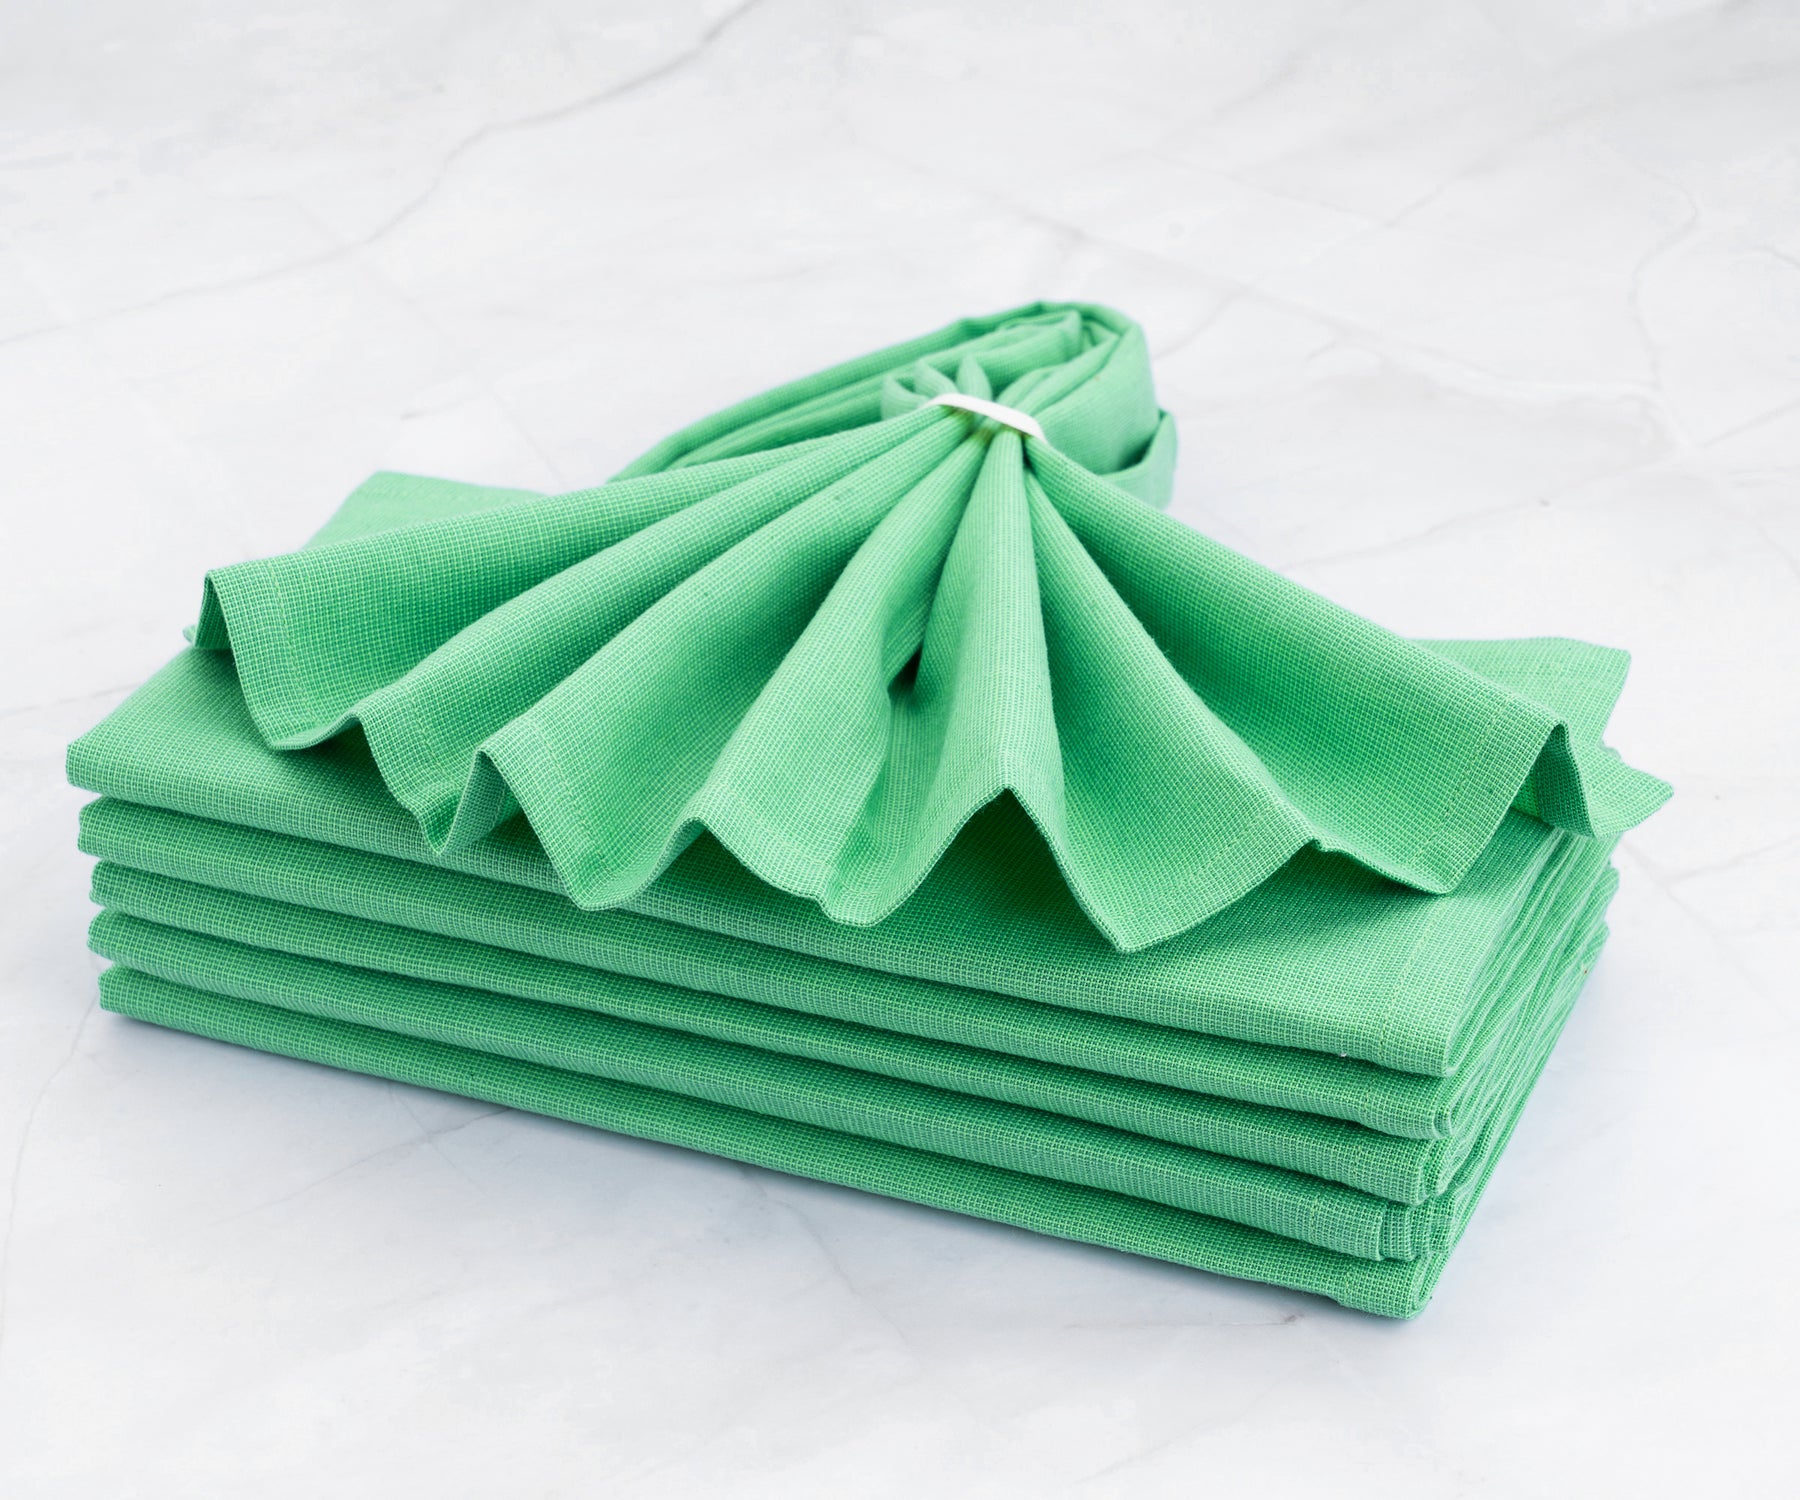 cloth dinner napkins, cloth napkins setof 6, green dinner napkins, green wdding napkins